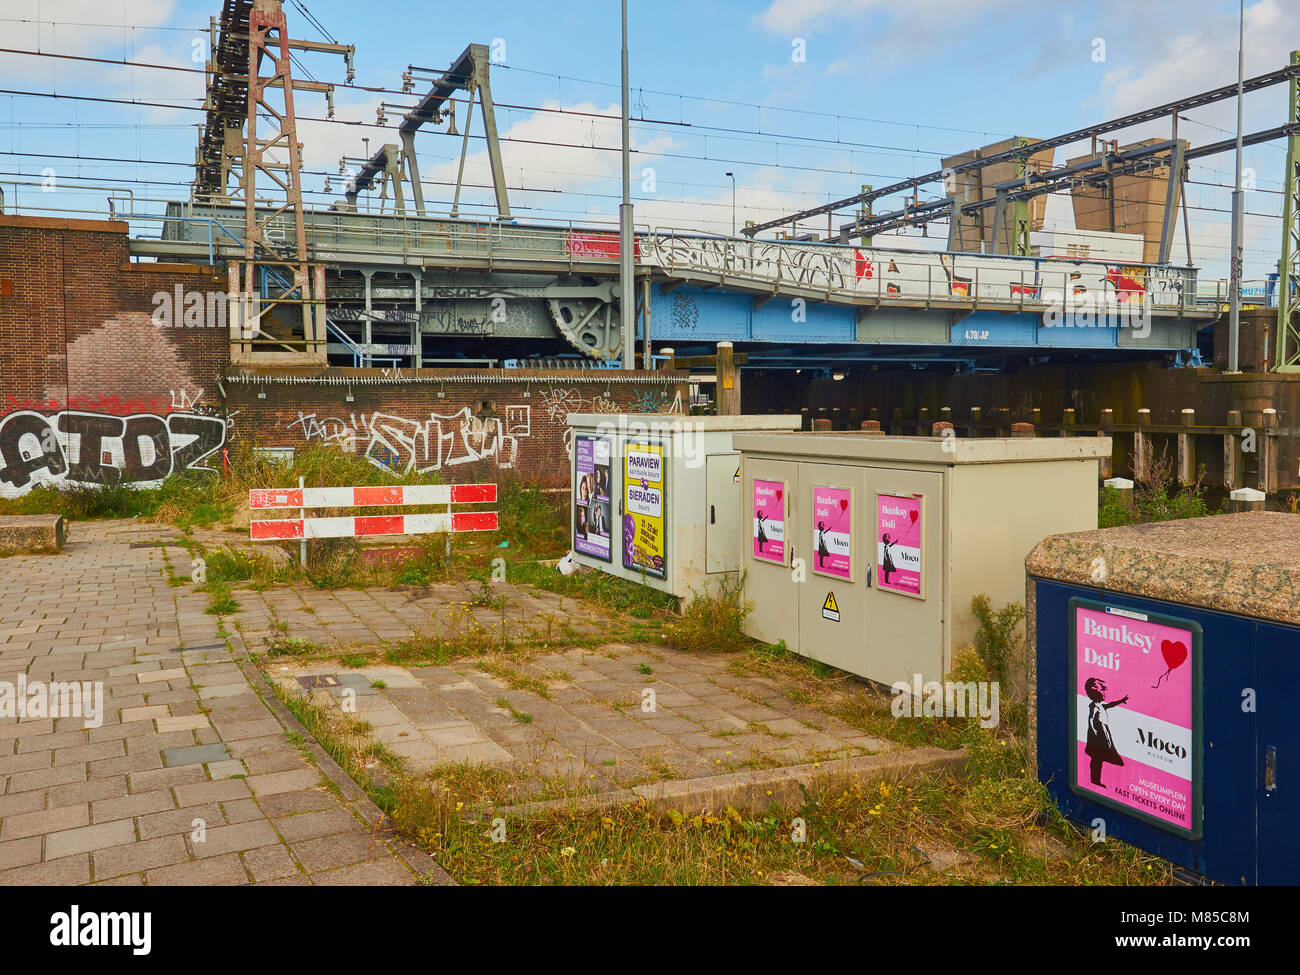 Escena urbana con afiches y pintadas, Ámsterdam, Países Bajos Foto de stock